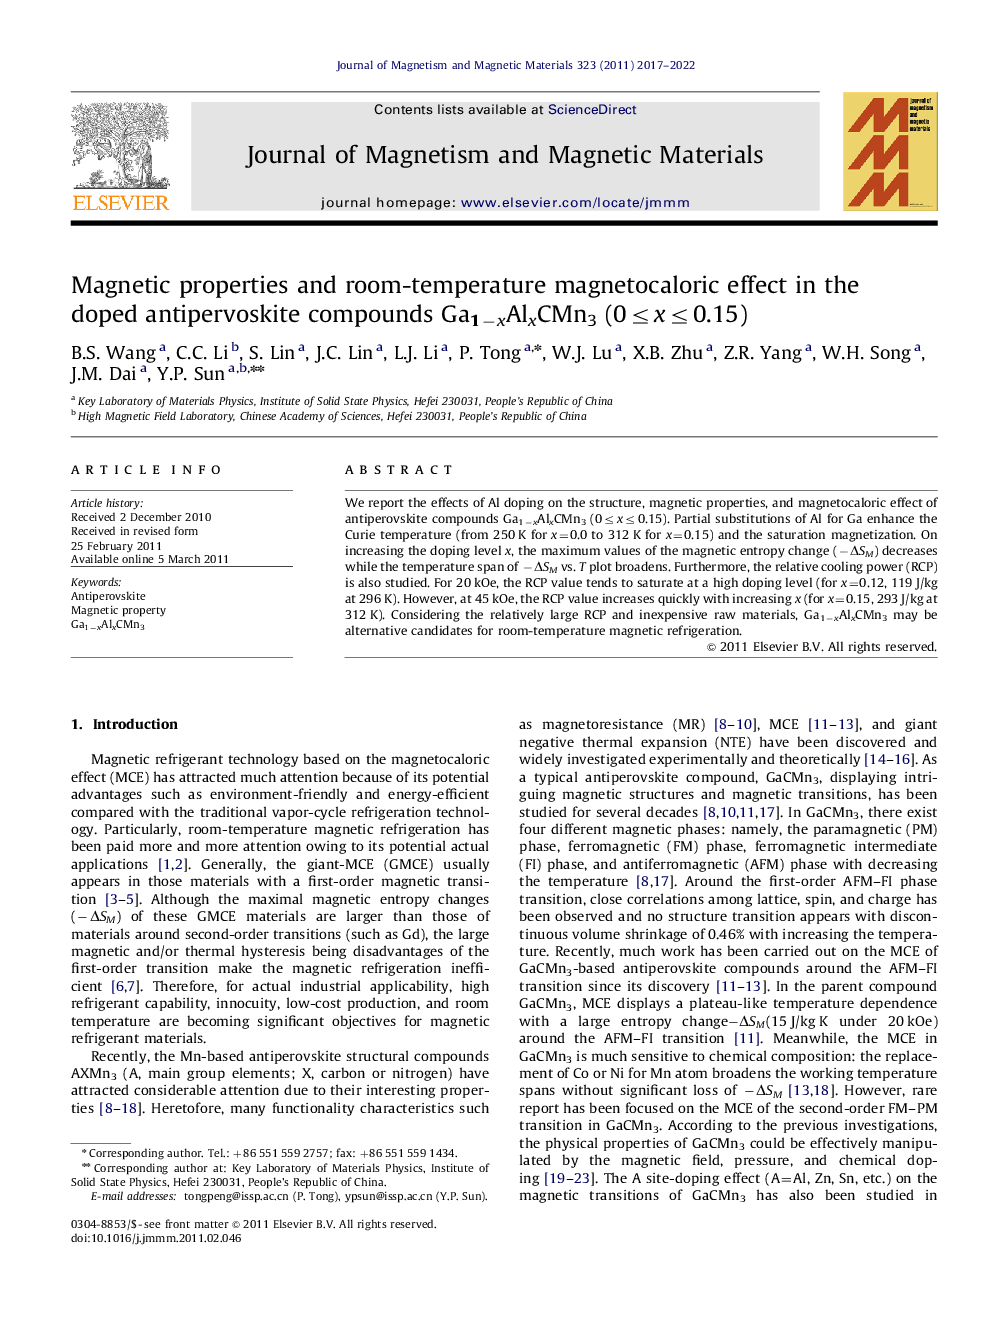 خواص مغناطیسی و اثر مغناگرمایی در دمای اتاق در ترکیبات ضدپروسکیت دوپ شده Ga1-xAlxCMn3 (0≤x≤0.15)